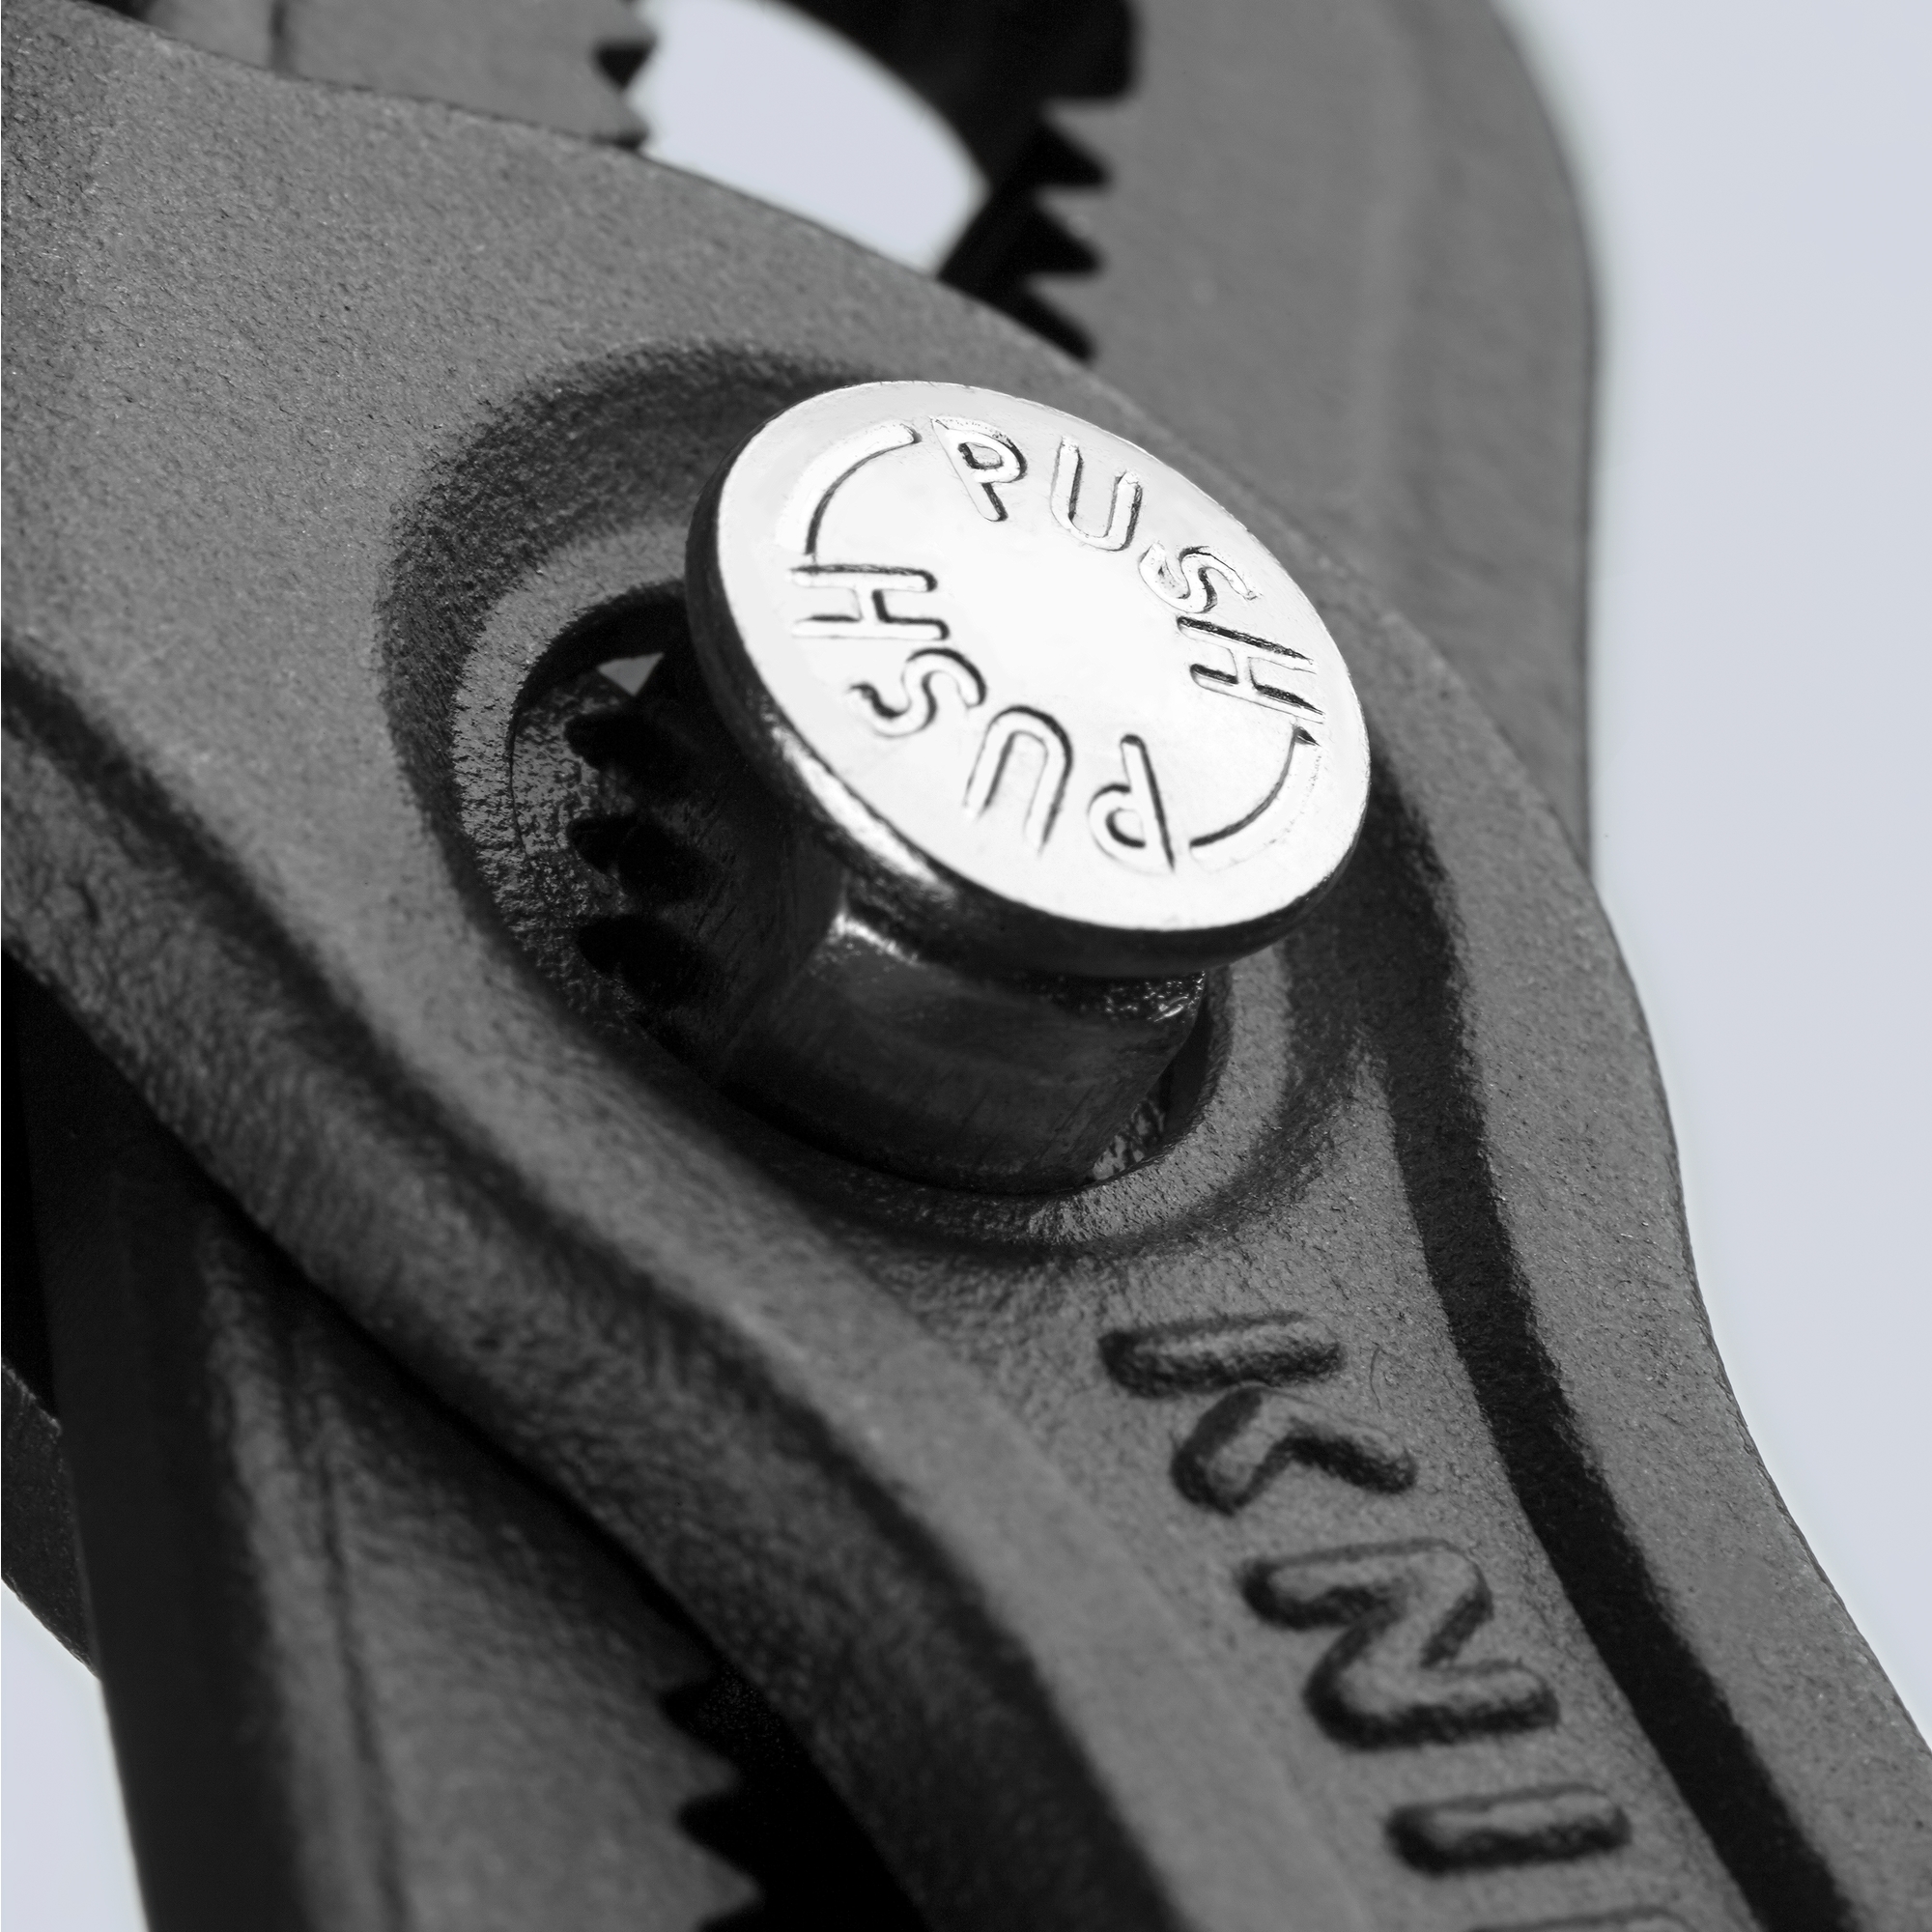 Knipex 5 Cobra Pliers - Plastic Grip